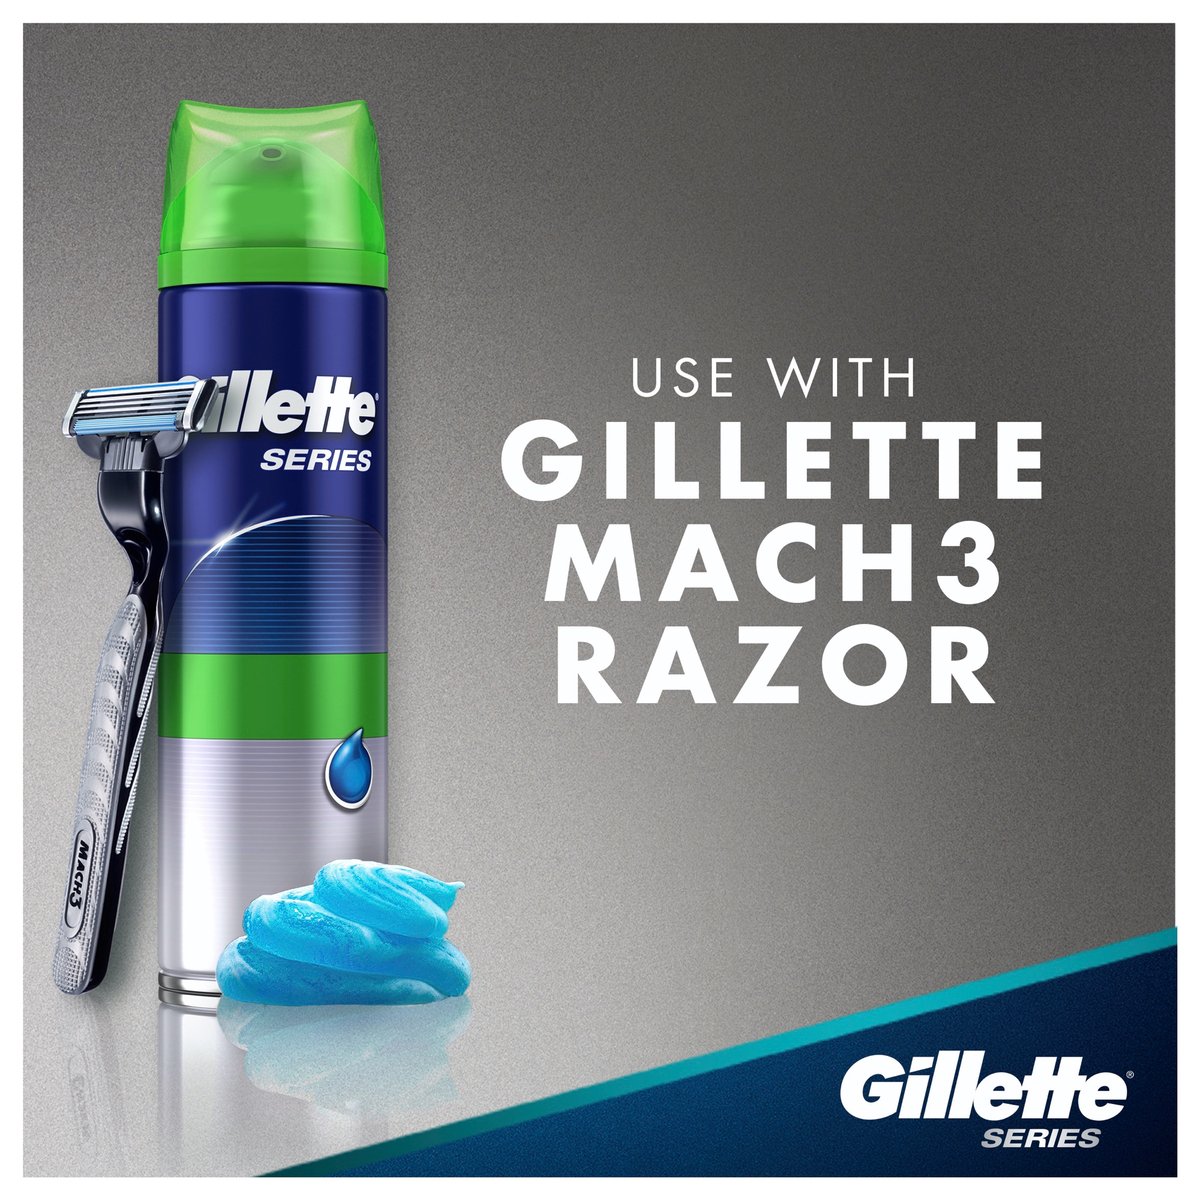 Gillette Series Sensitive Shaving Gel 2 x 200 ml